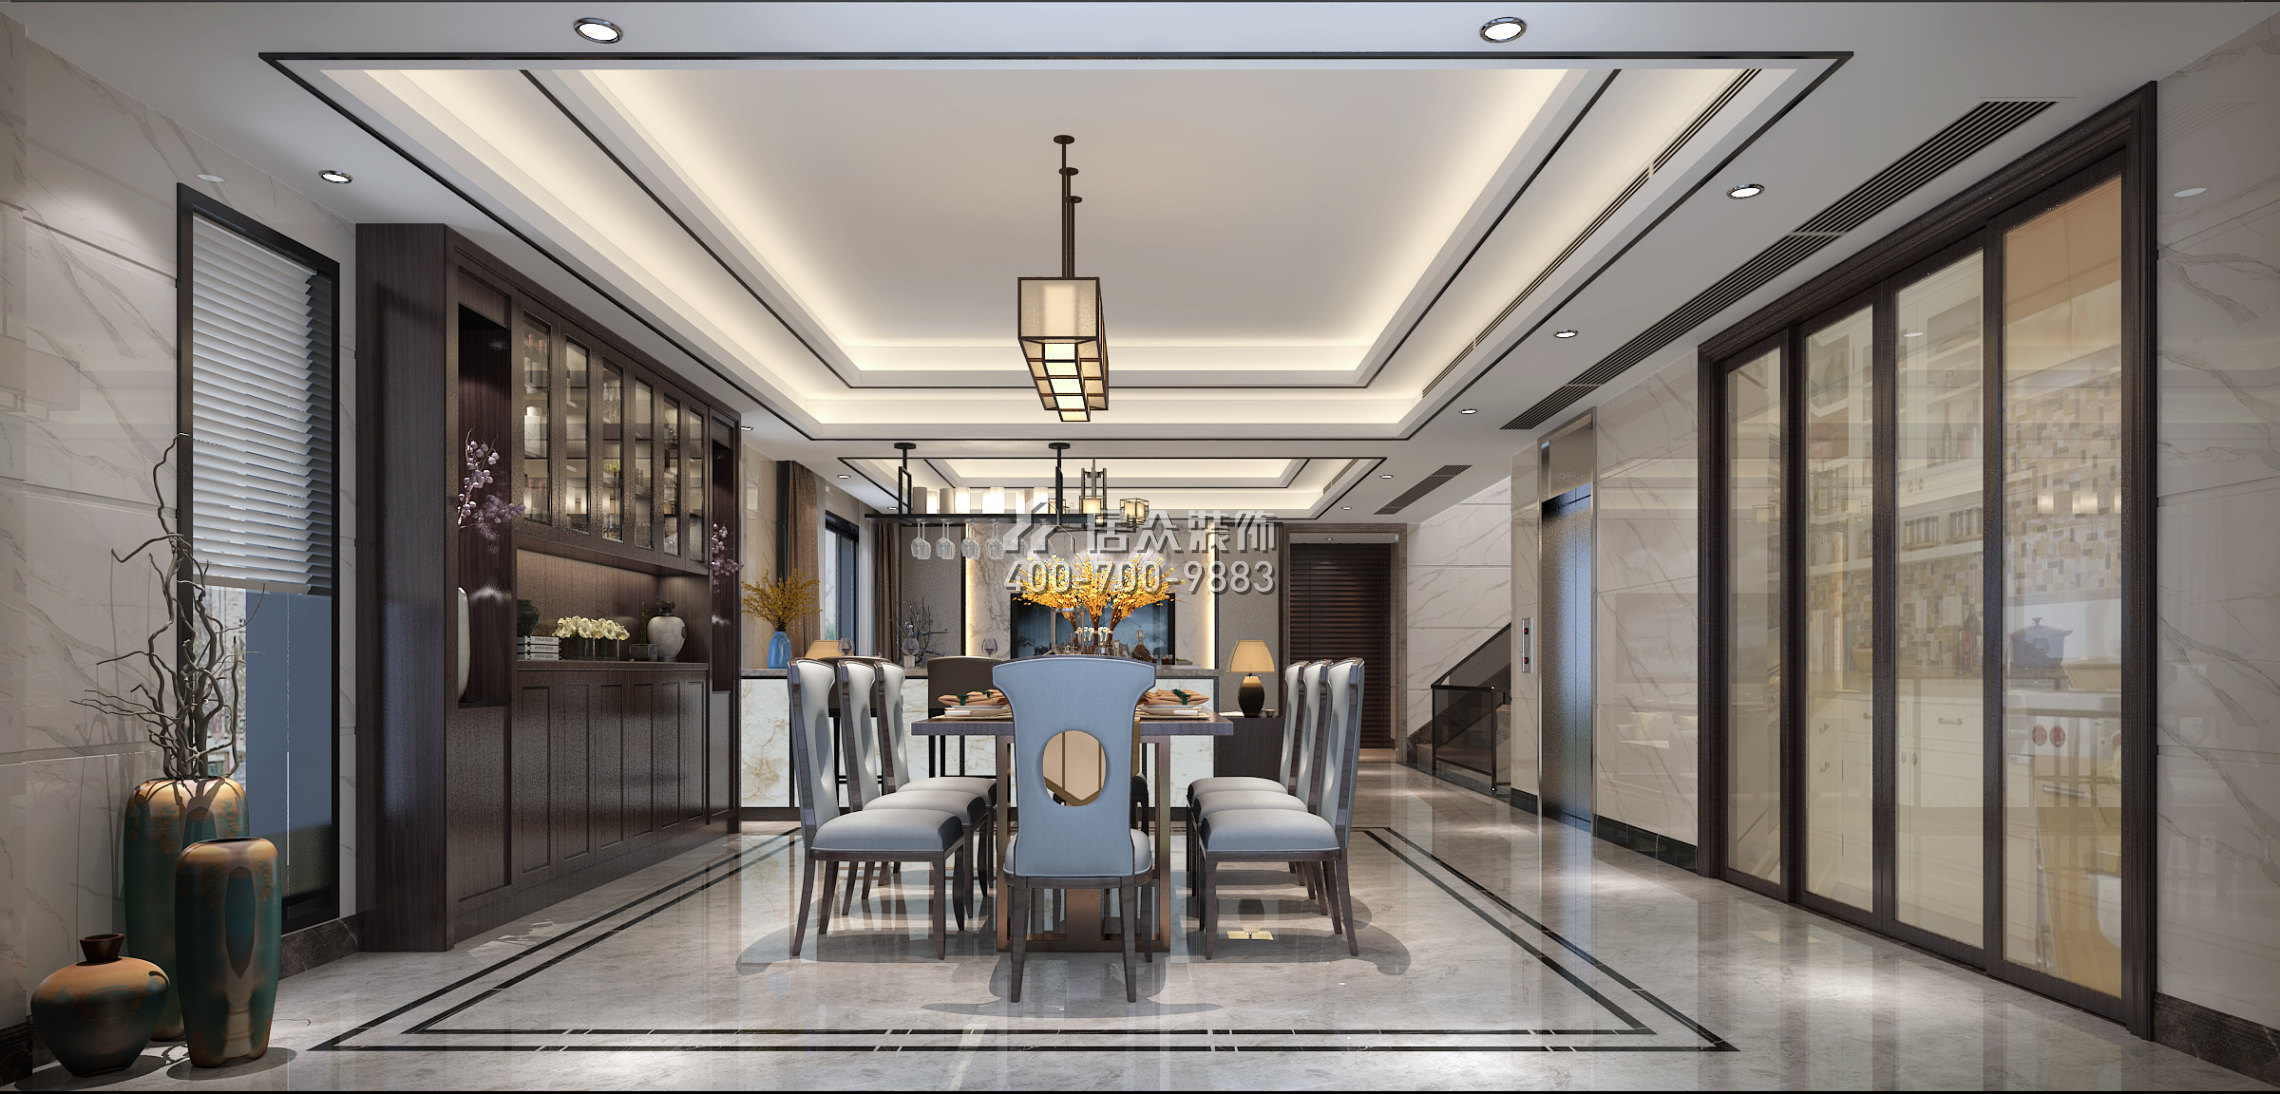 华侨城天鹅湖650平方米中式风格别墅户型餐厅装修效果图